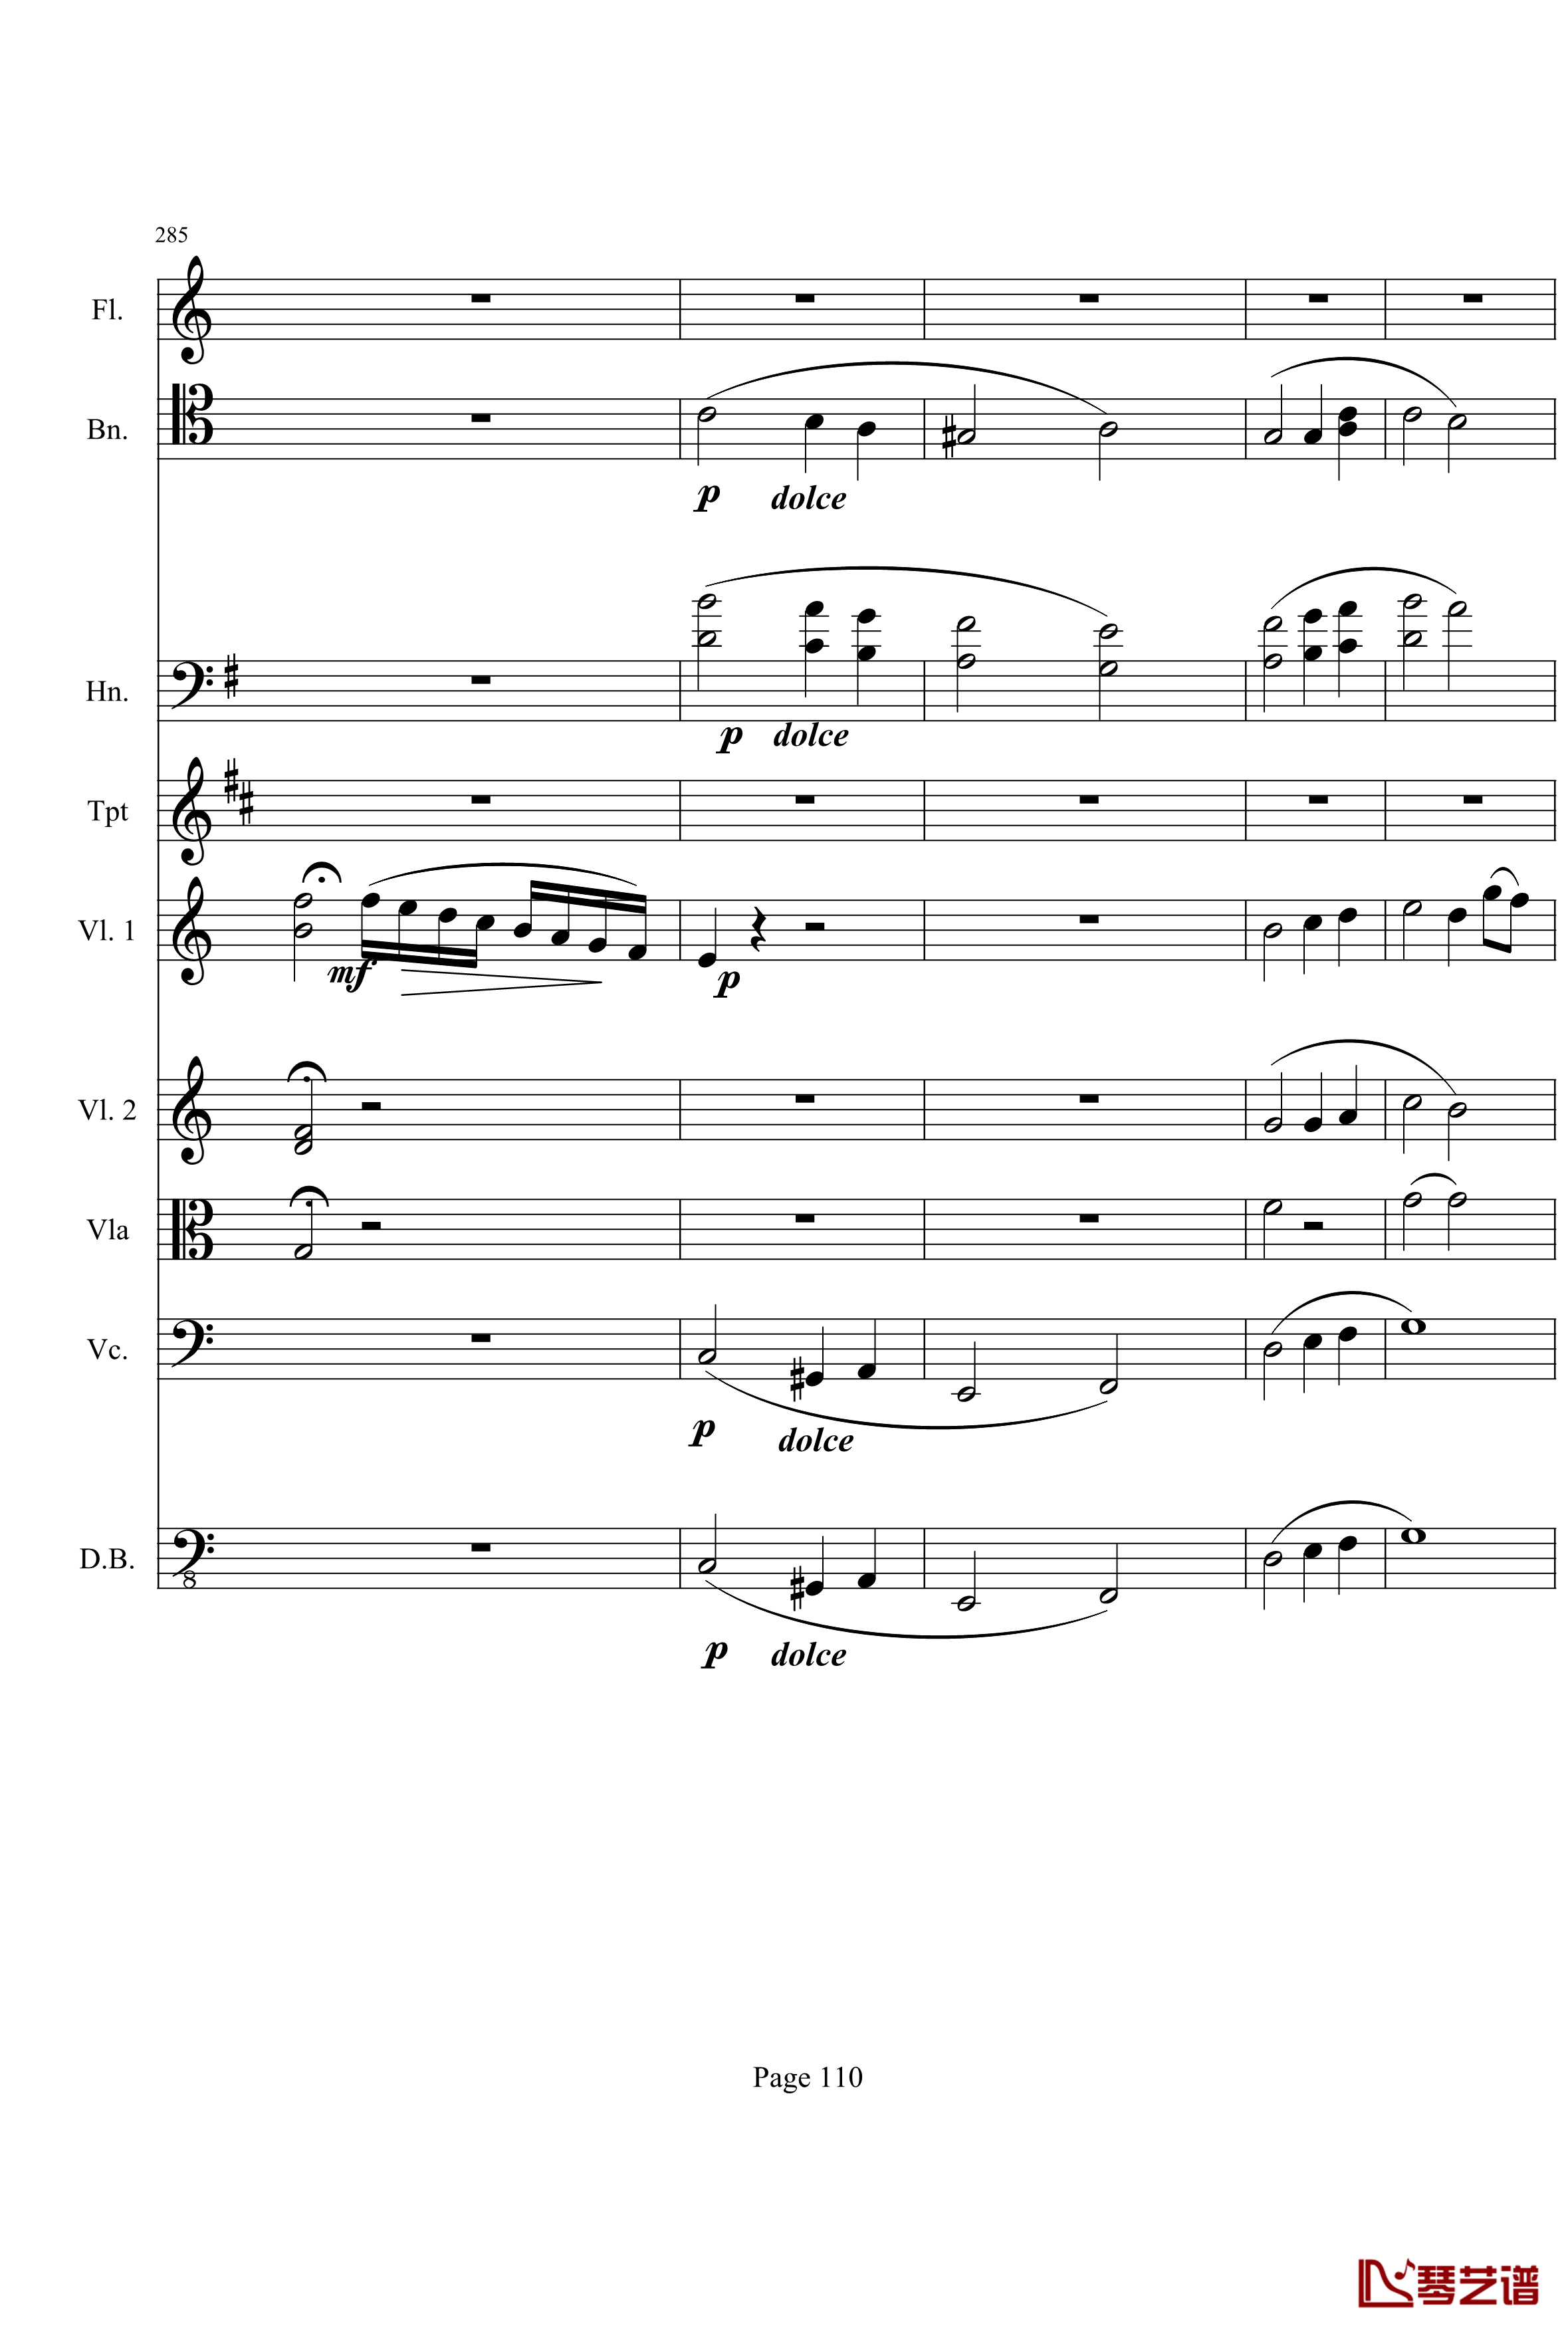 奏鸣曲之交响钢琴谱-第21-Ⅰ-贝多芬-beethoven110